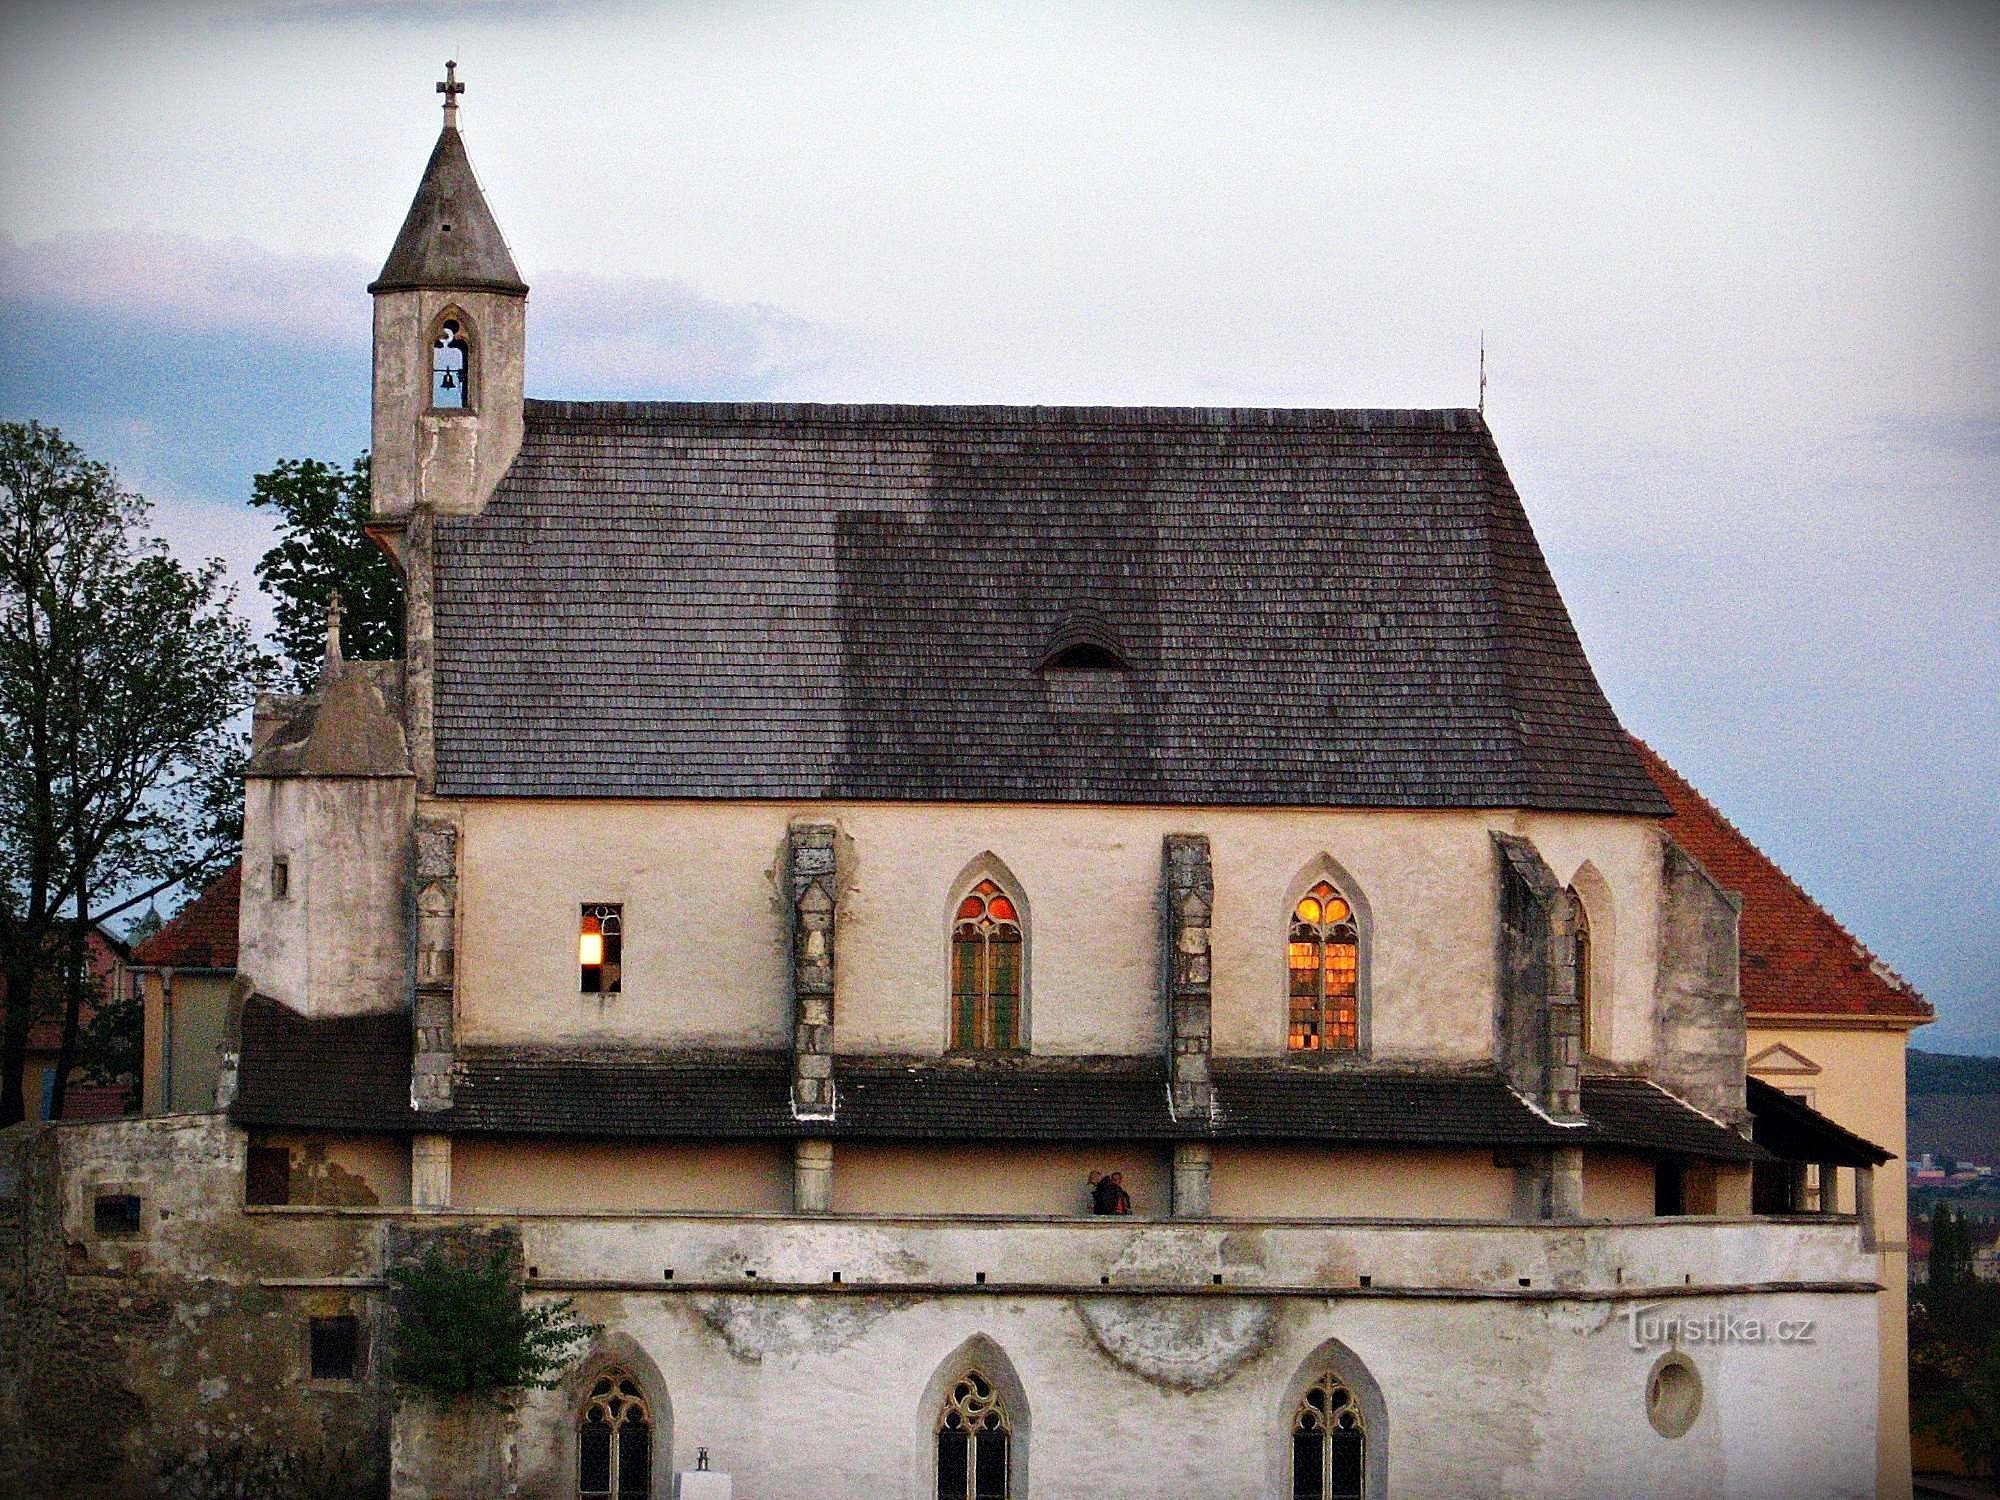 Znojmo Capela Sf. Wenceslas